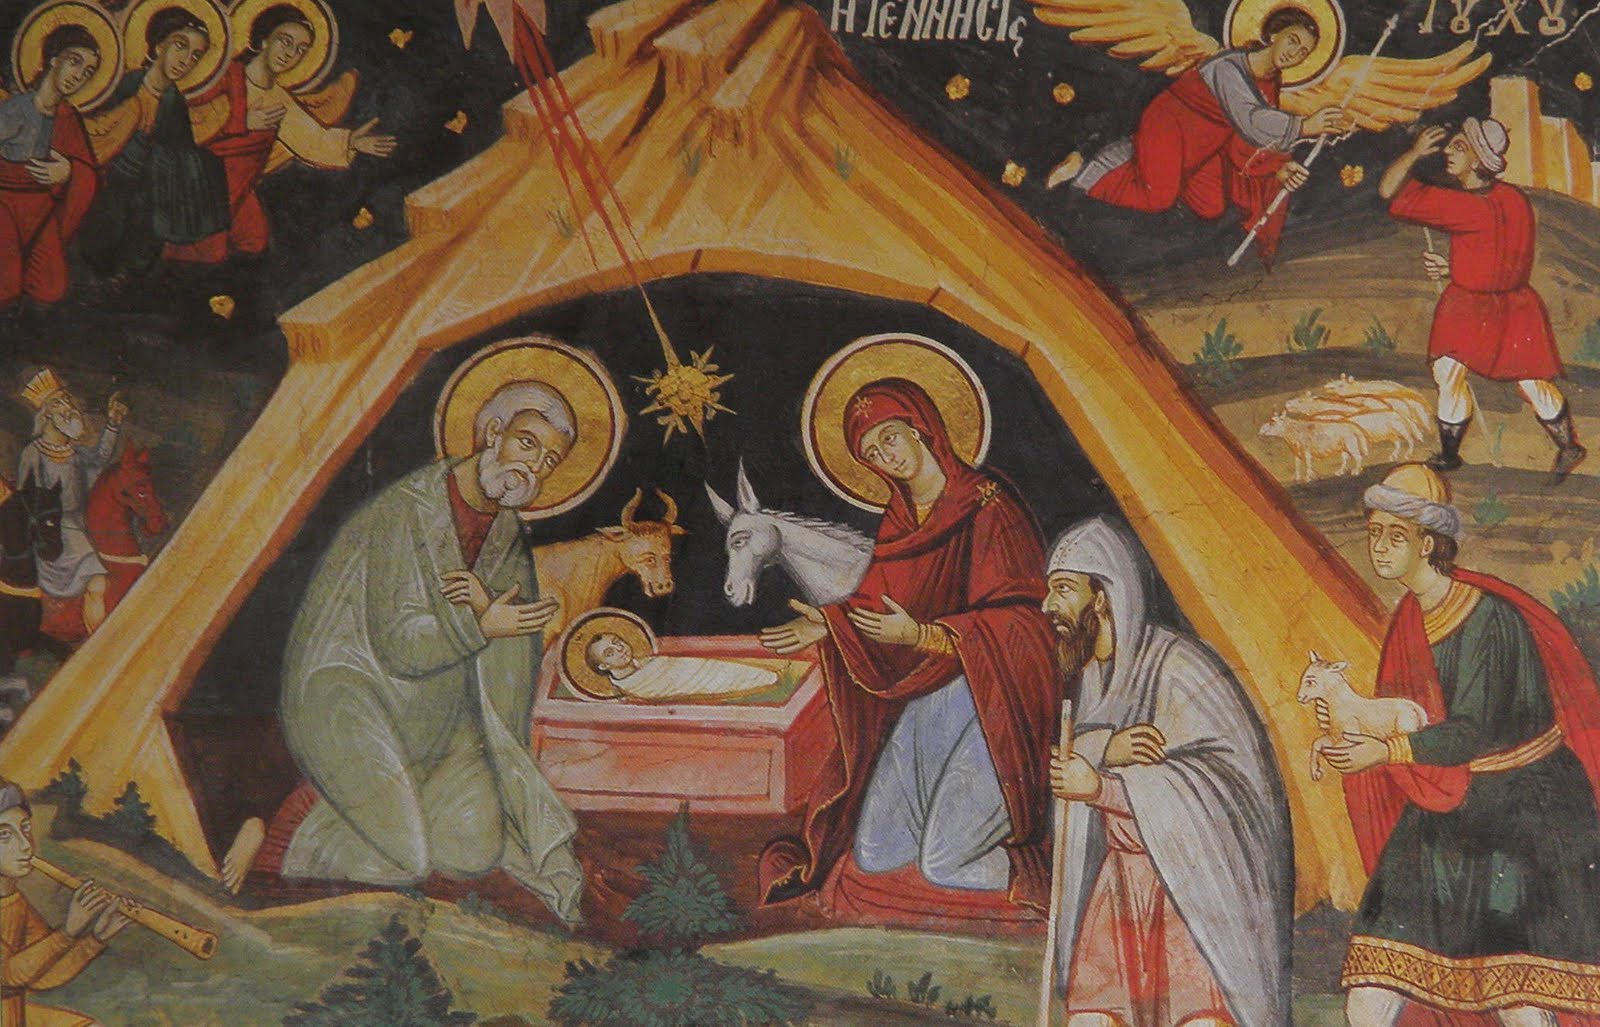 Πότε ξεκινήσαμε να γιορτάζουμε τα Χριστούγεννα; – Τι πληροφορίες έχουμε από τα Ευαγγέλια;